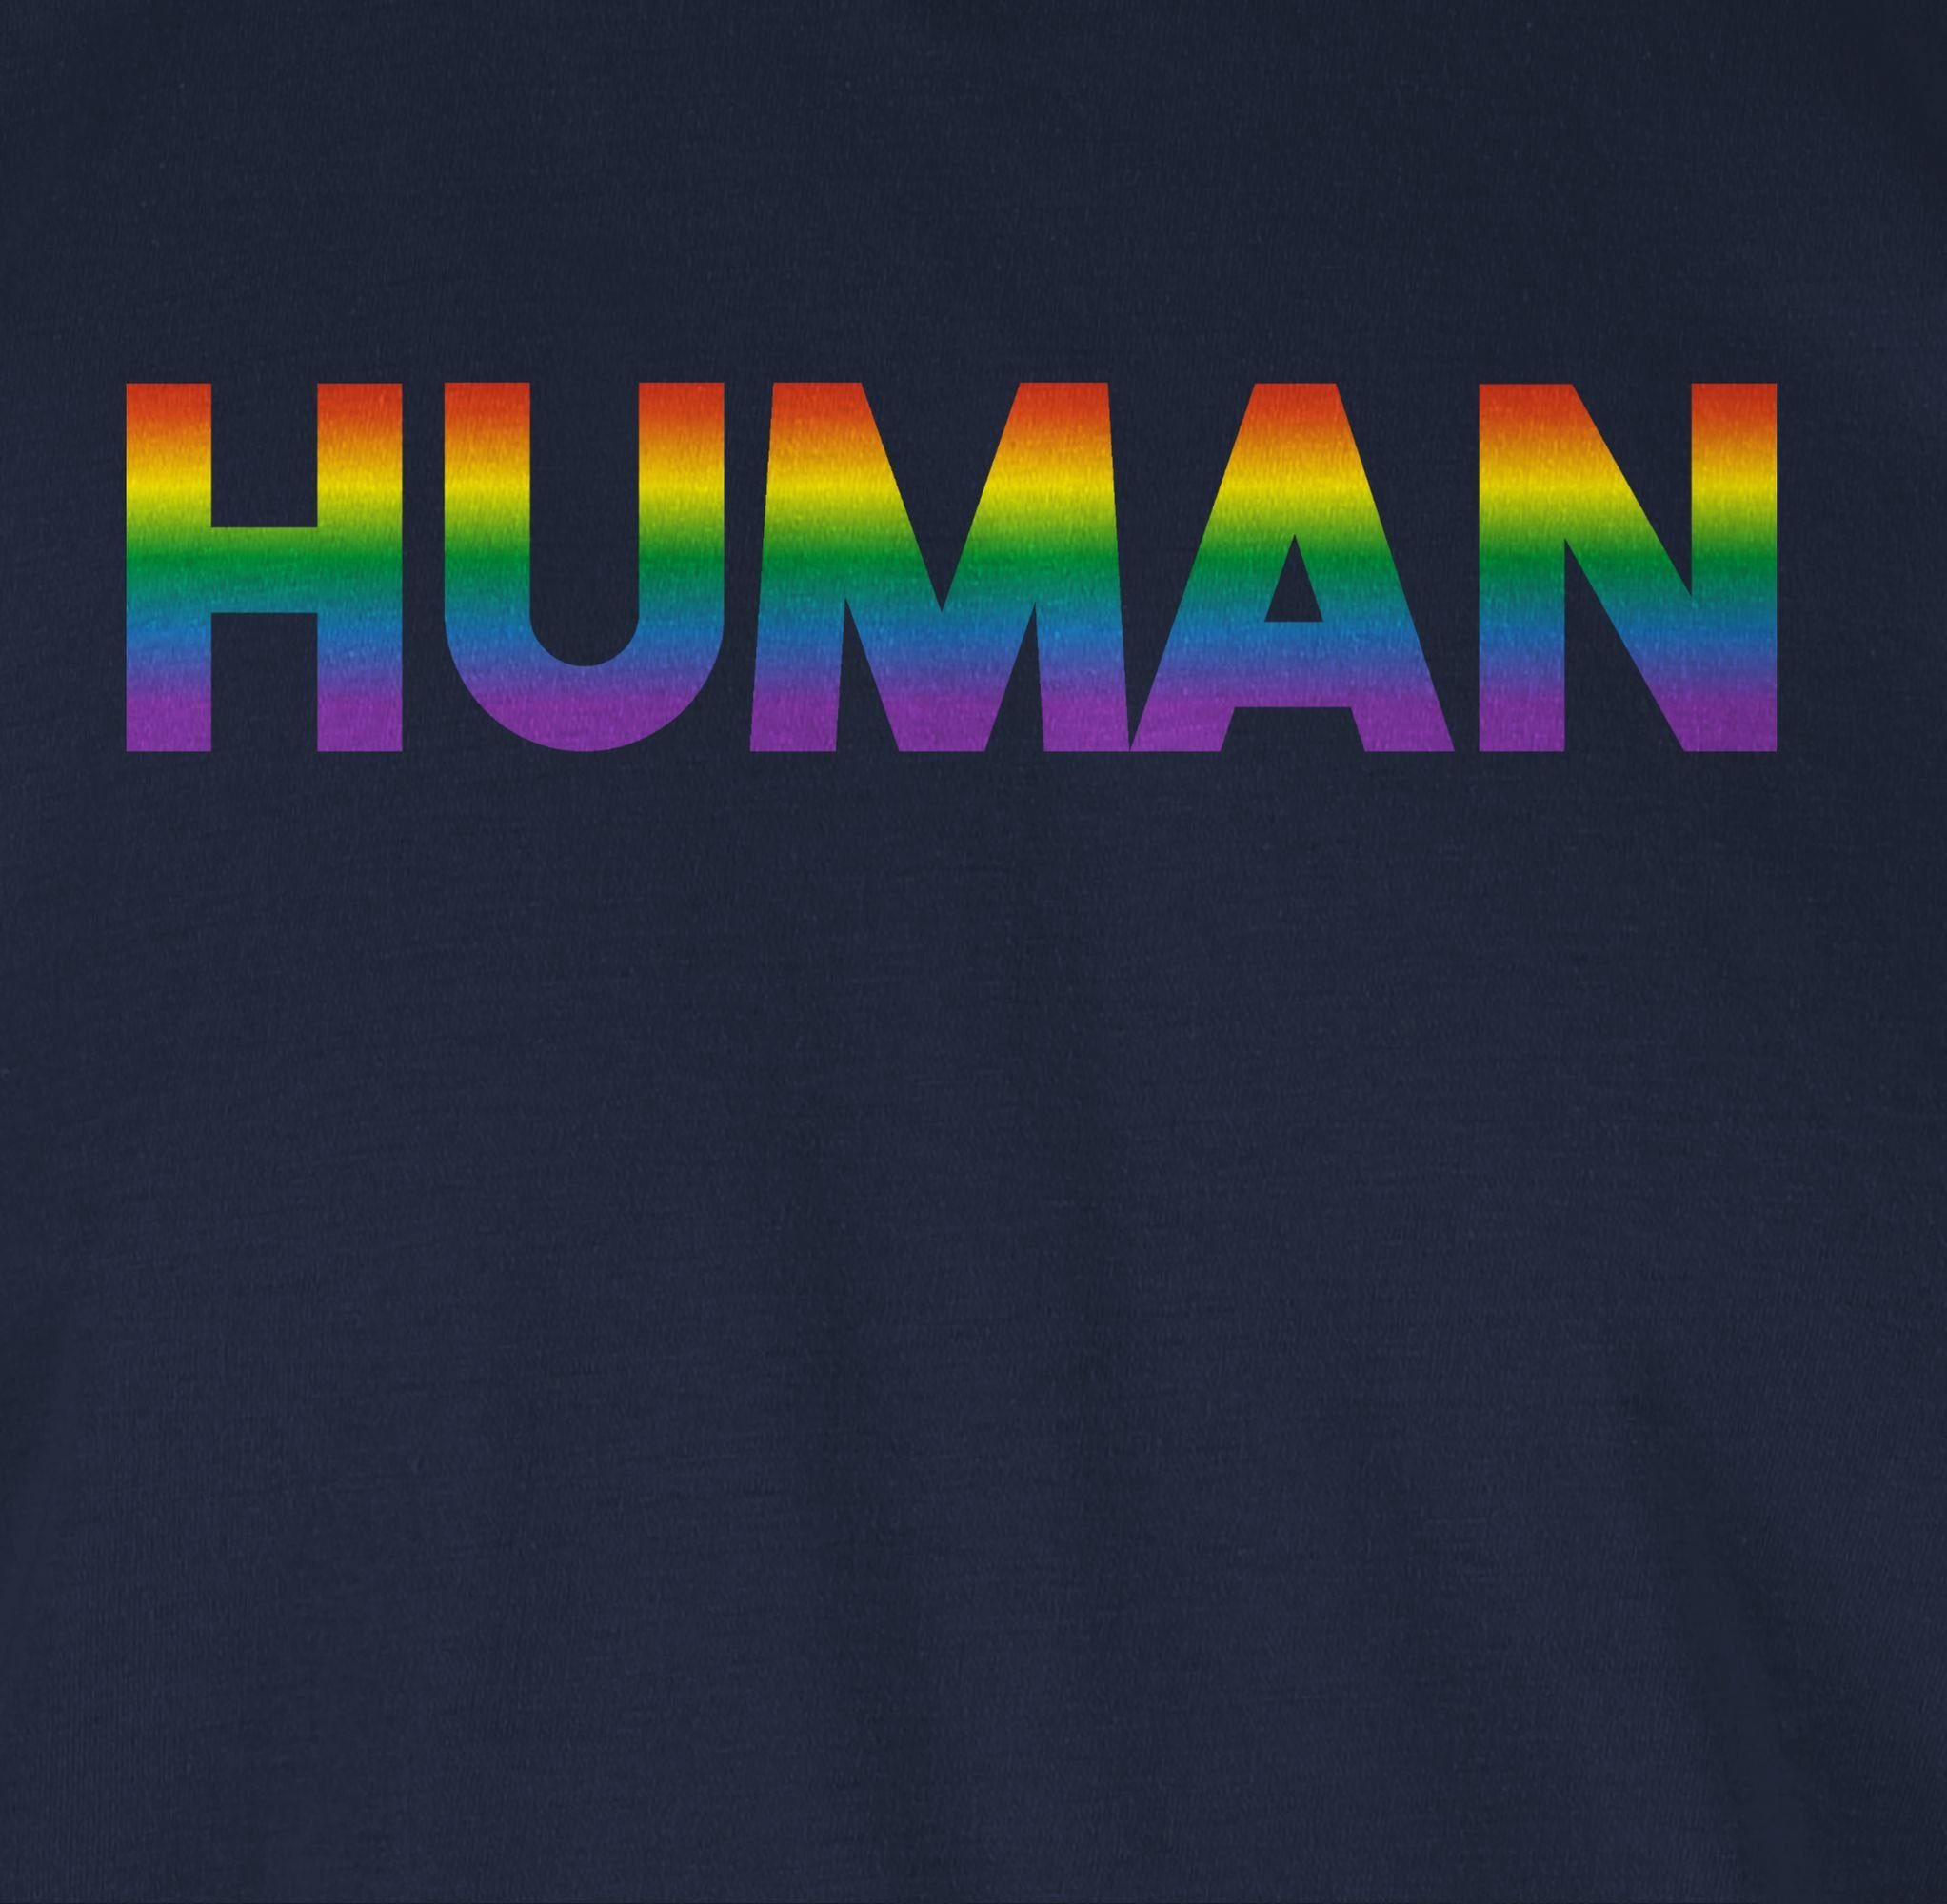 Shirtracer T-Shirt Human - Regenbogen - Navy Schriftzug 02 Blau LGBT Kleidung